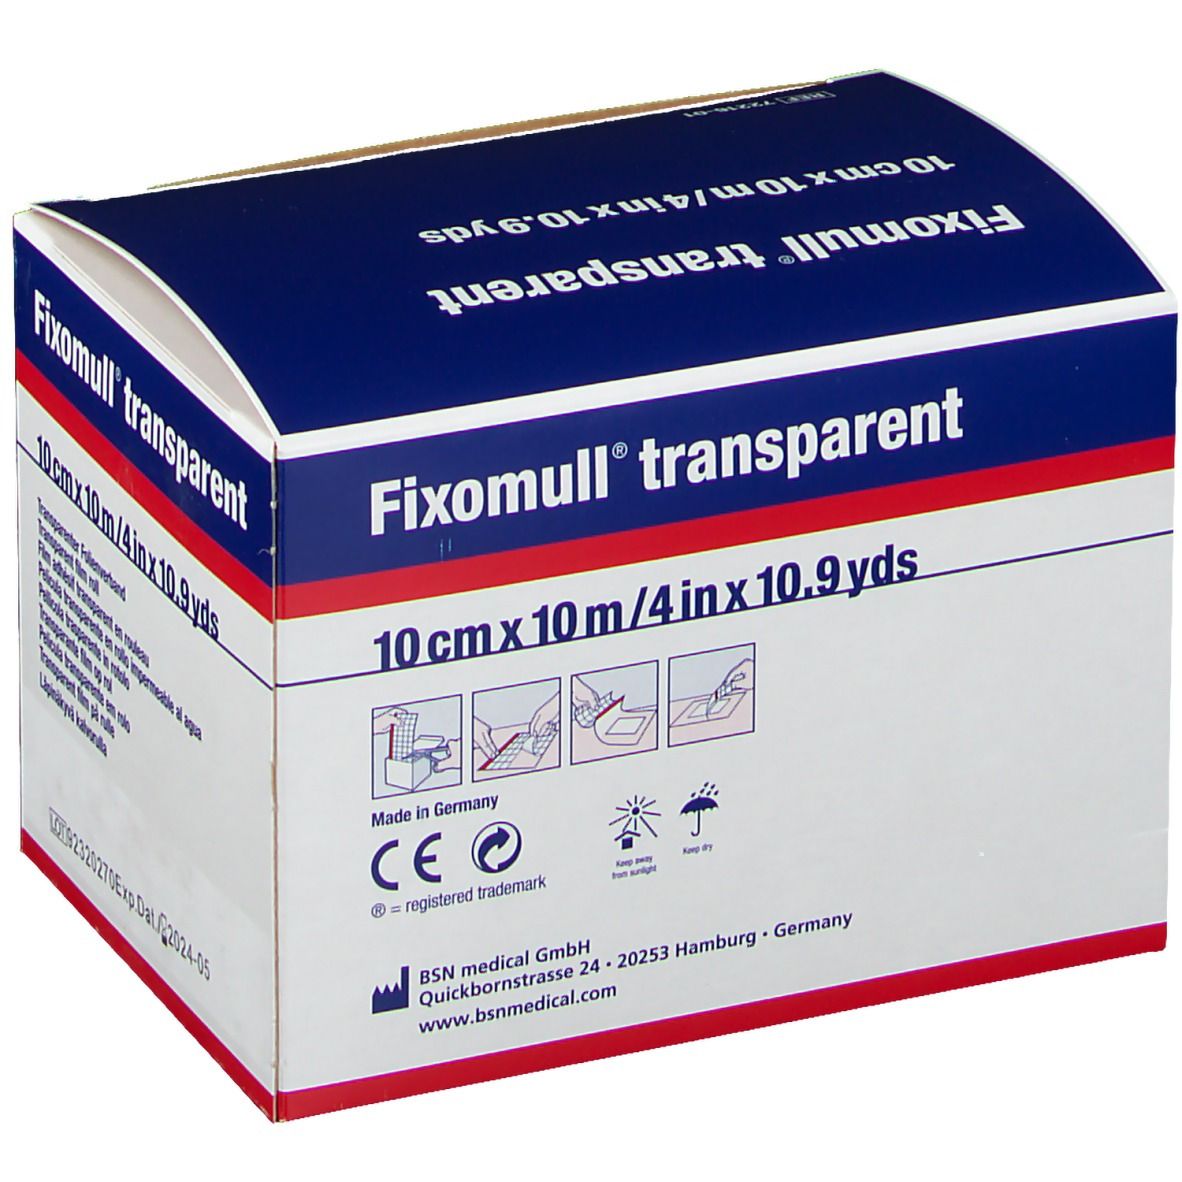 Fixomull® transparent 10 cm x 10 m